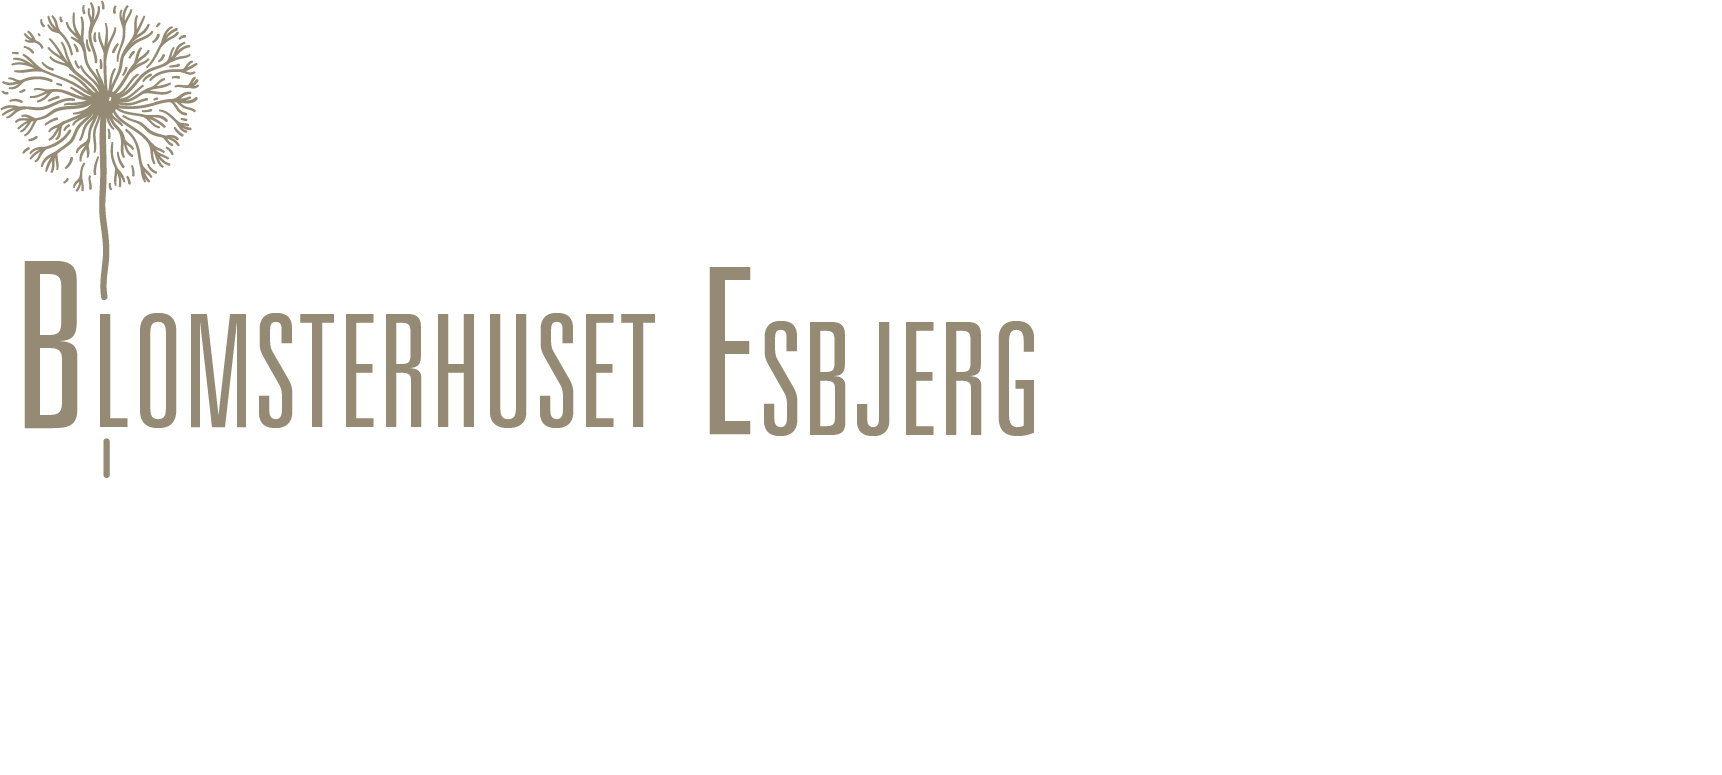 Blomsterhuset Esbjerg Logo (1)